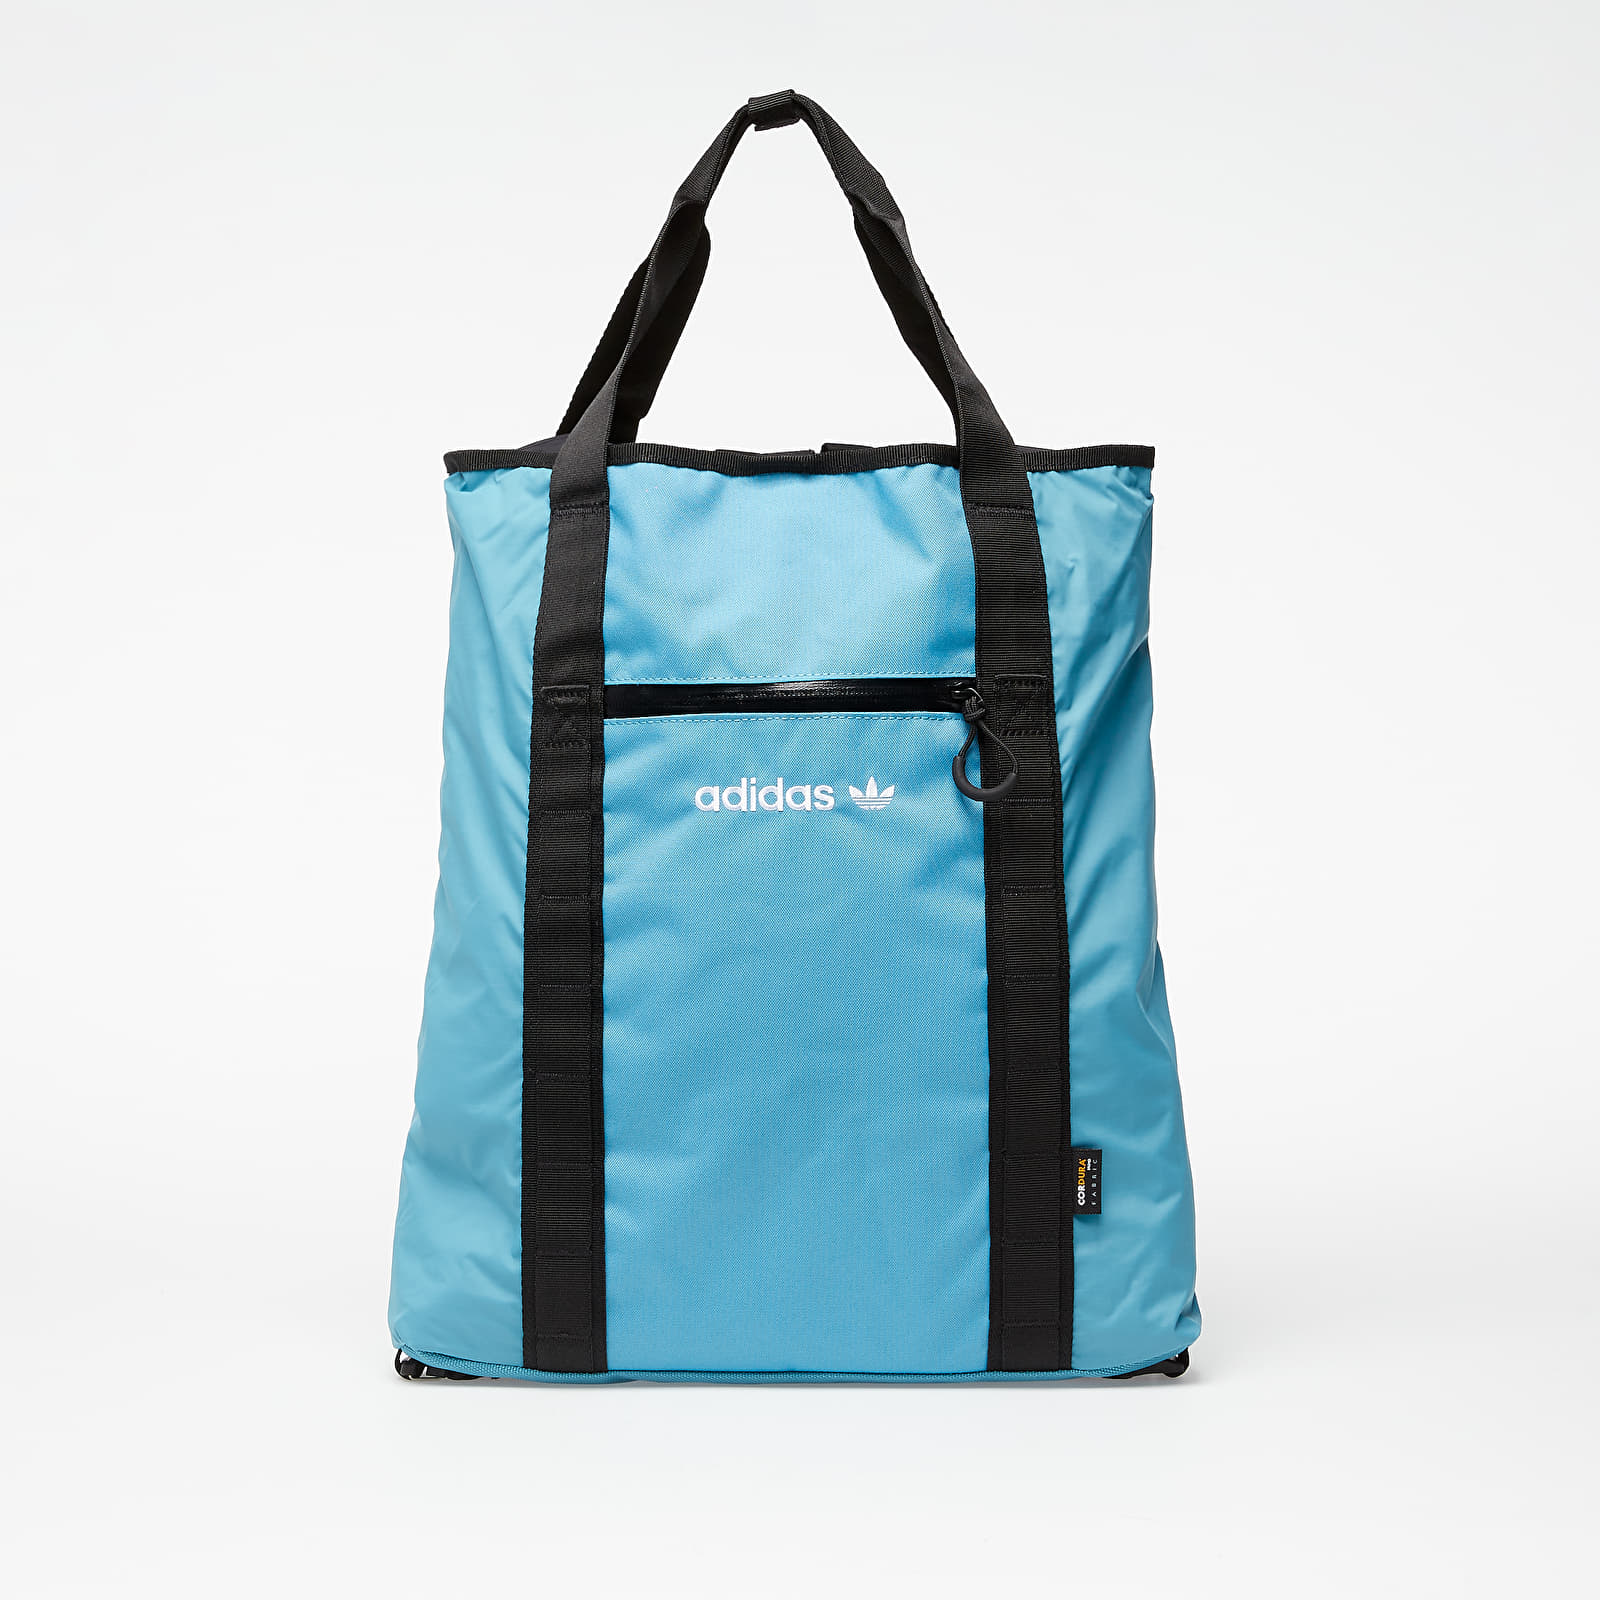 Bags & backpacks adidas Adventure Tote Tactile Steel/ Multi Solid Grey